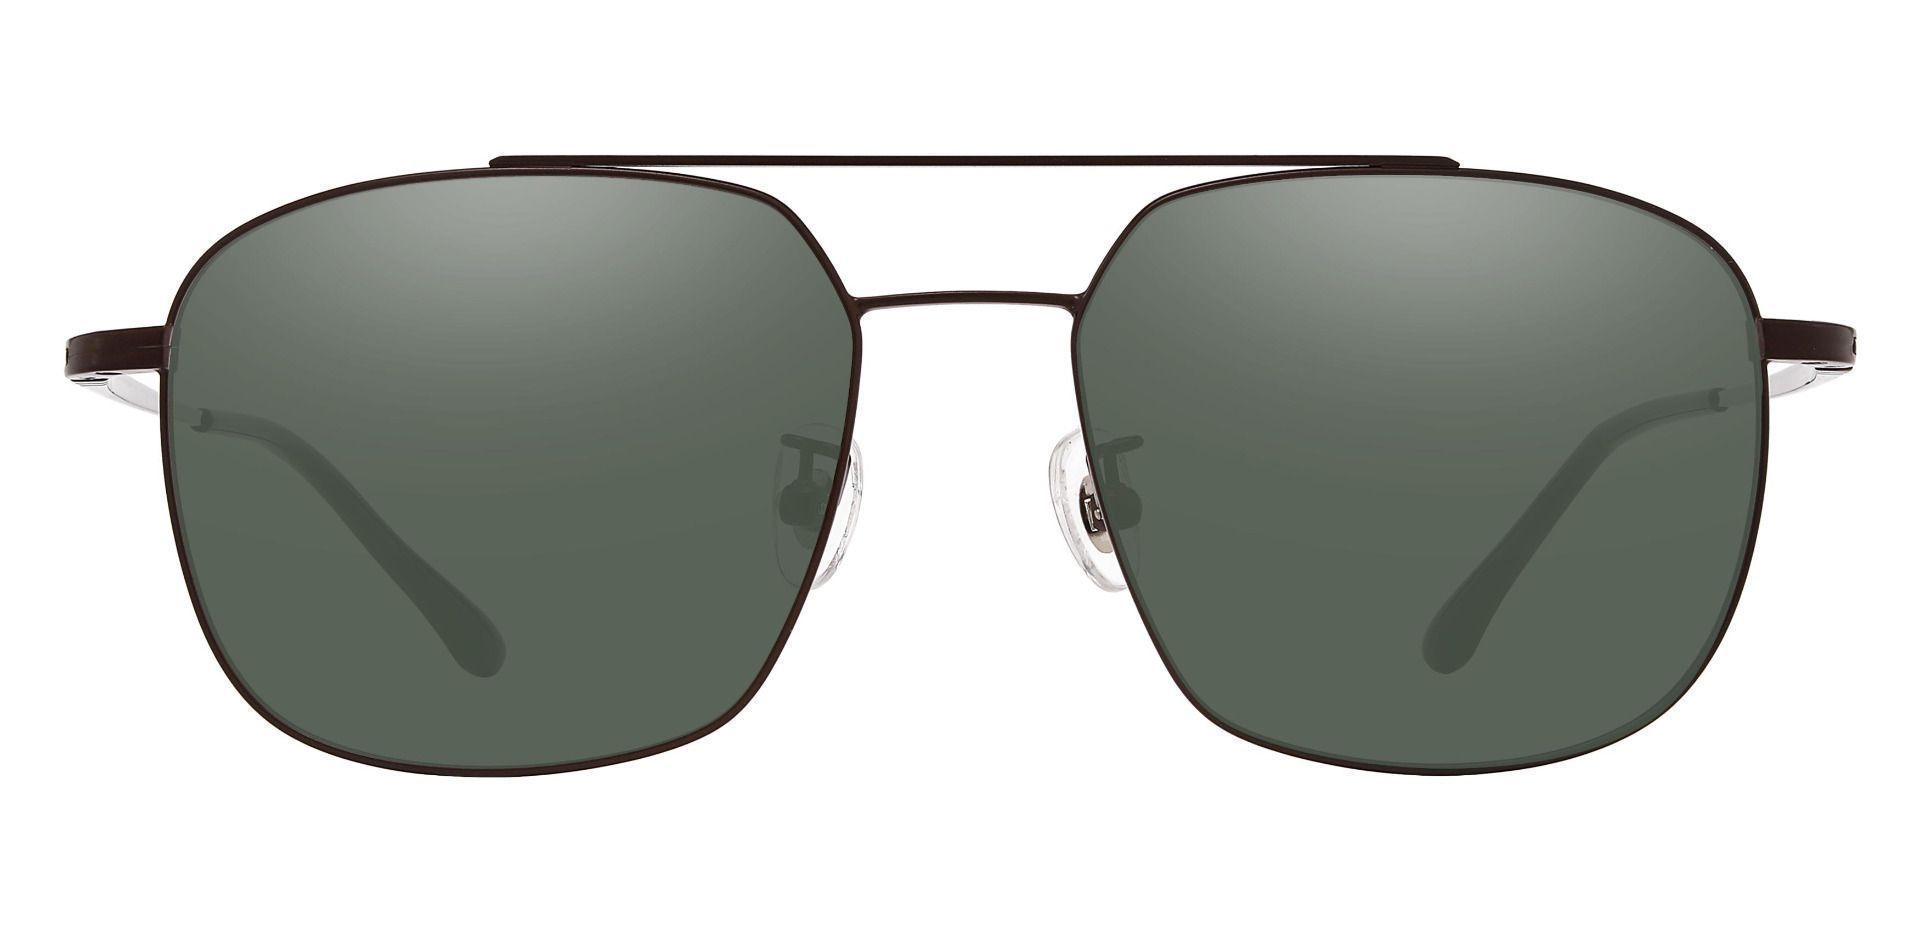 Trevor Aviator Prescription Sunglasses - Brown Frame With Green Lenses